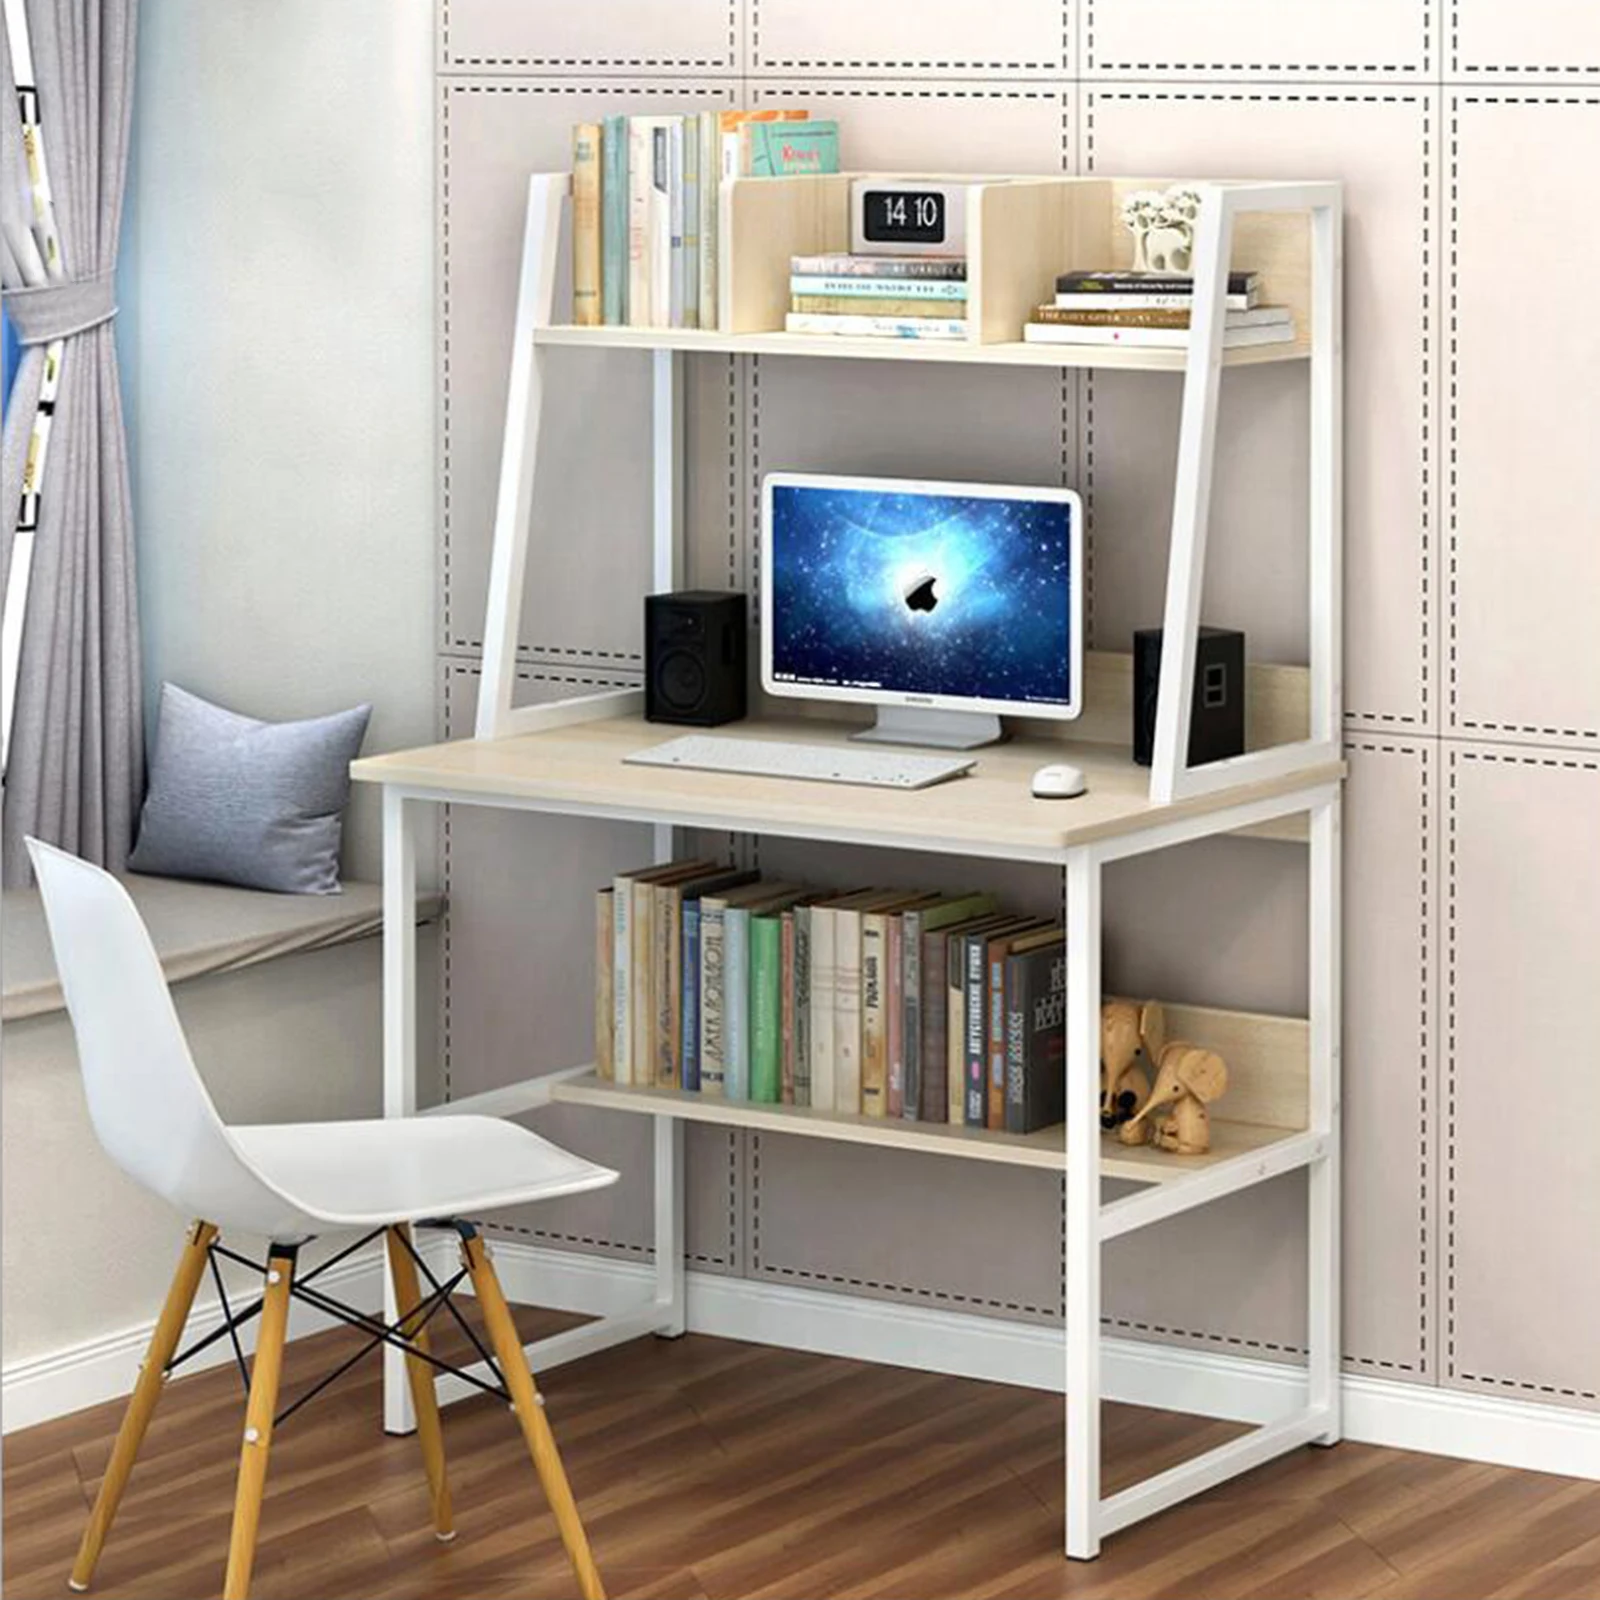 Стол для ноутбука дом Школа Офис стол для учебы игровая подставка с полки для книжных шкафов стойка мебель Китай